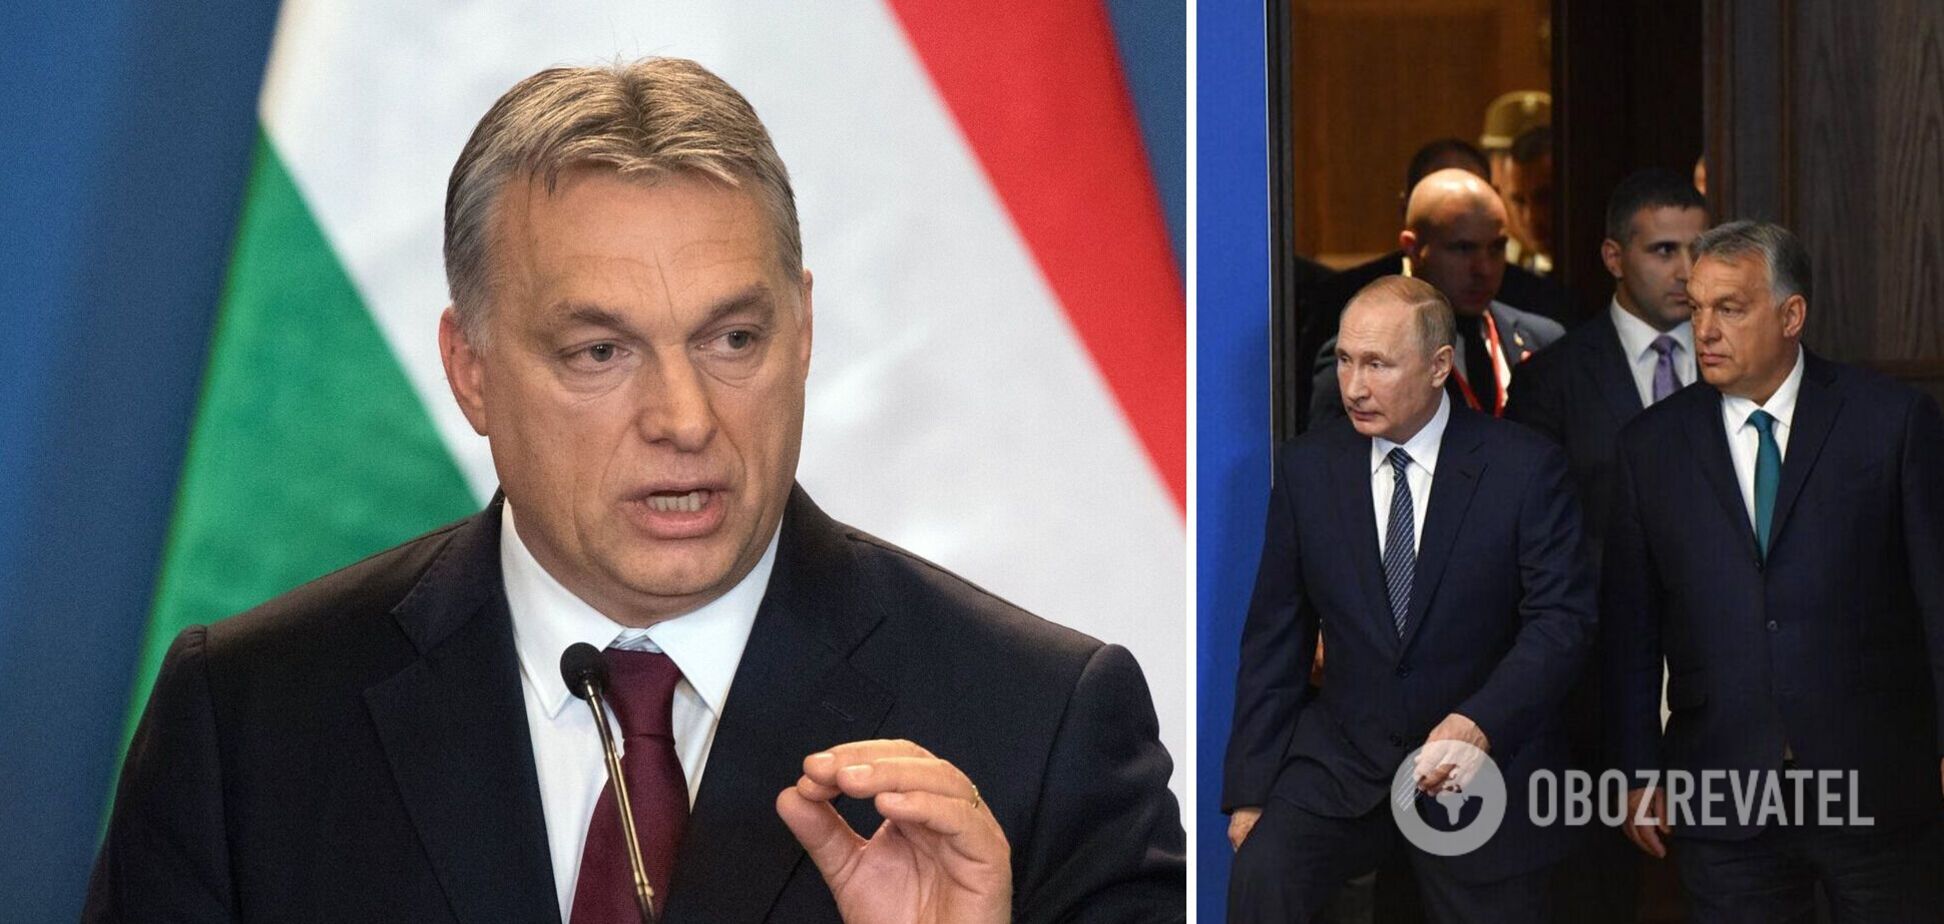 Друг Путина Орбан в четвертый раз станет премьером Венгрии, он назвал Зеленского своим оппонентом